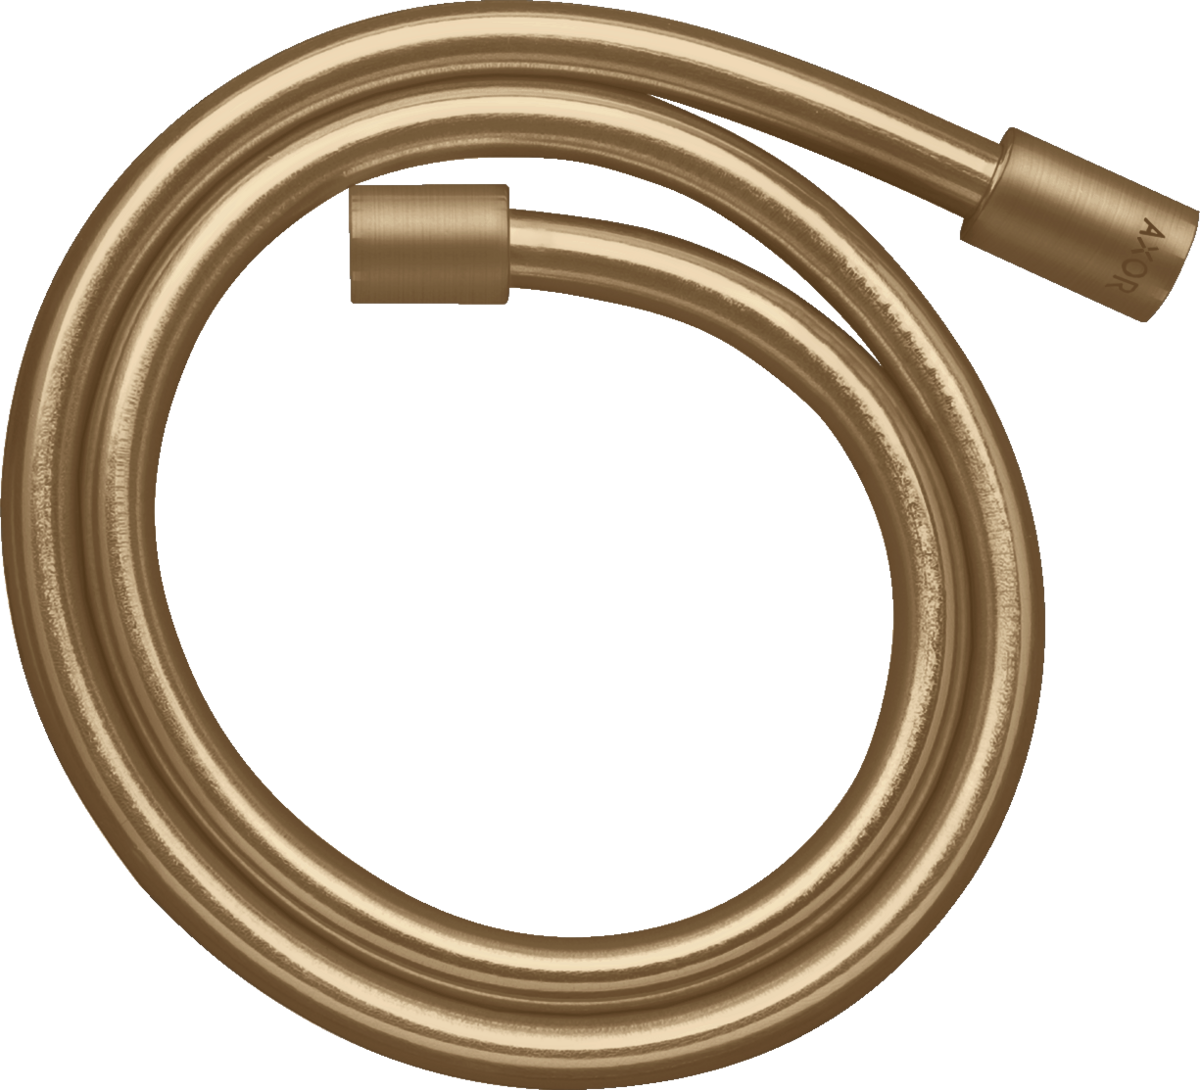 εικόνα του HANSGROHE AXOR Starck Metal effect shower hose 1.25 m with cylindrical nuts #28282140 - Brushed Bronze